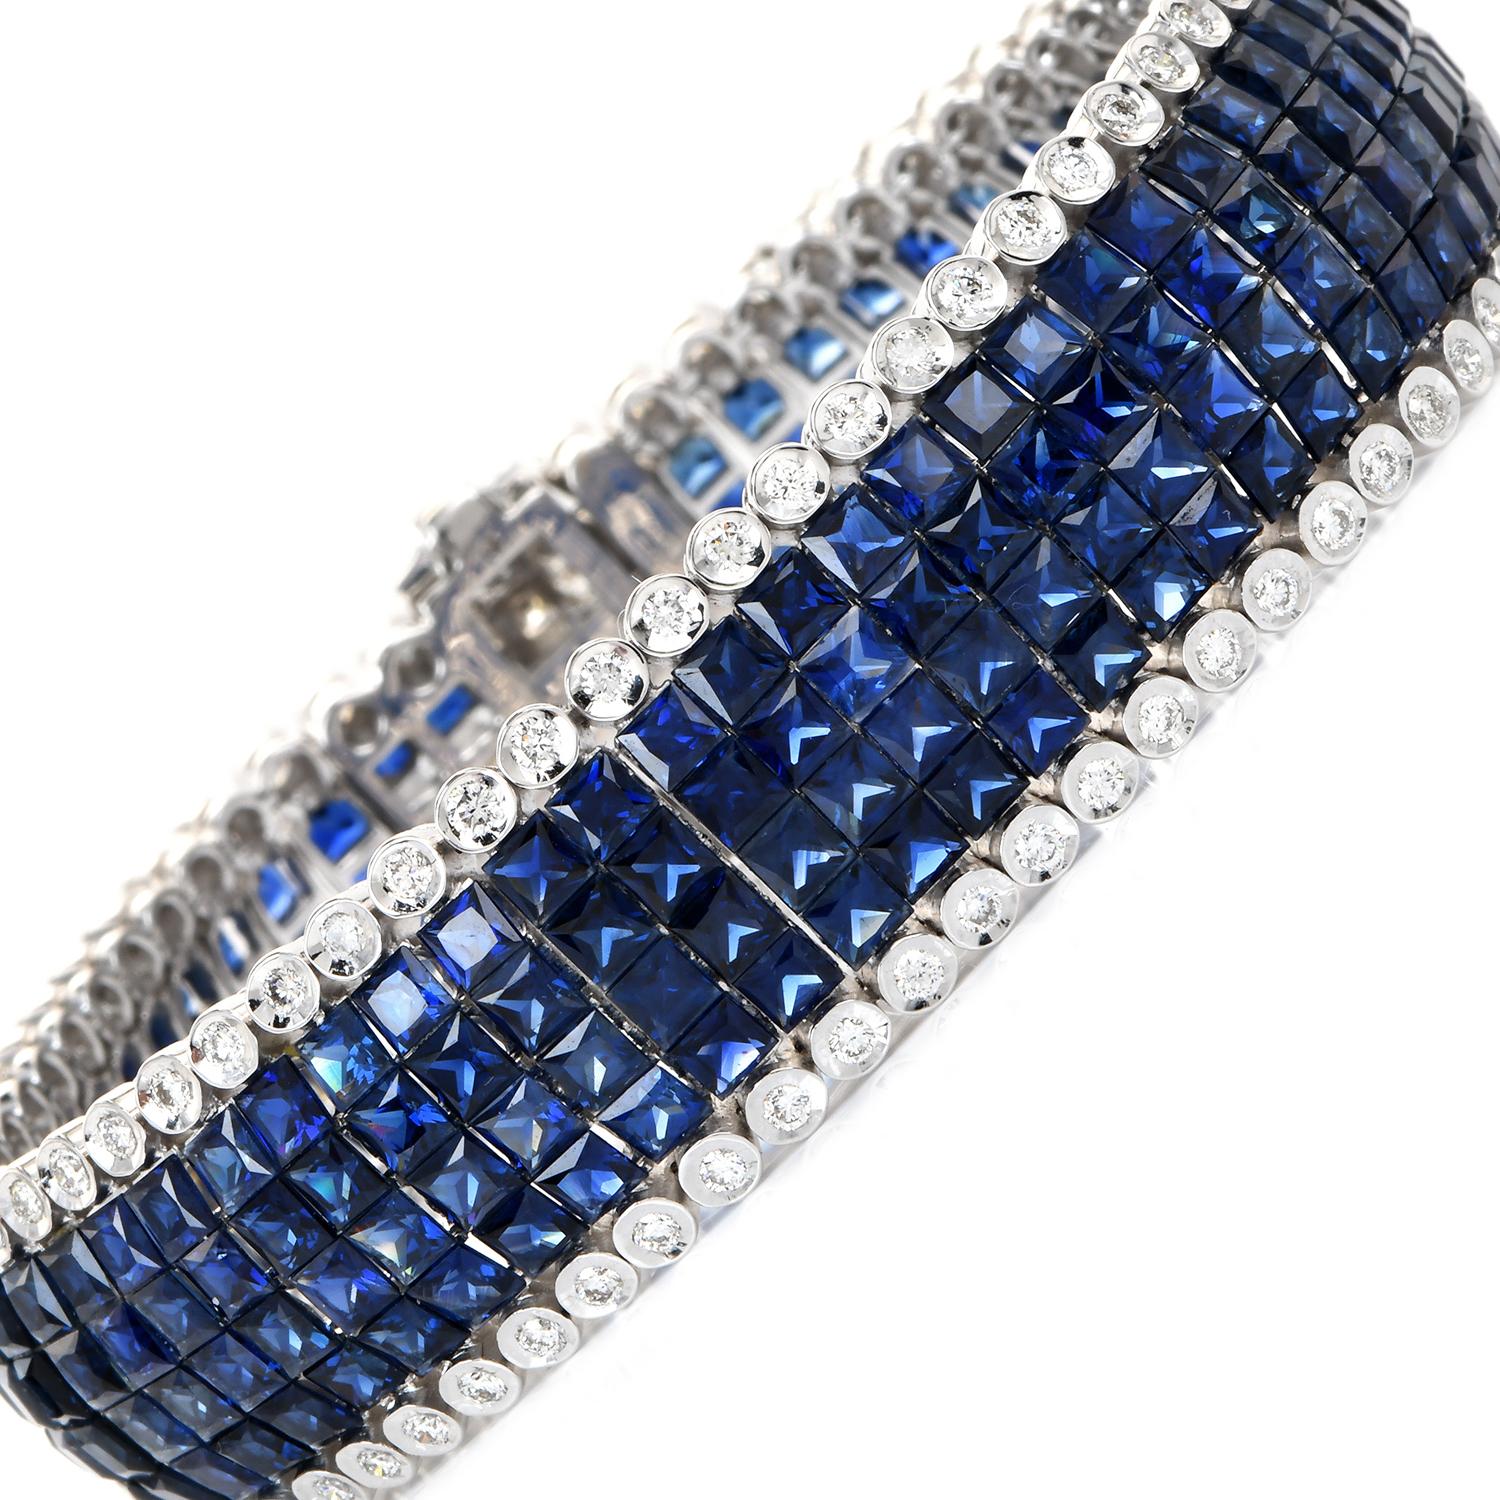 Dieses Armband besteht aus einem flexiblen Band mit 4 Reihen echter Saphire im Kalibré-Schliff, die von runden Diamanten eingefasst sind. Dieses Armband ist aus 18 Karat Weißgold gefertigt und zeigt blaue Saphire im Stufenschliff mit einem